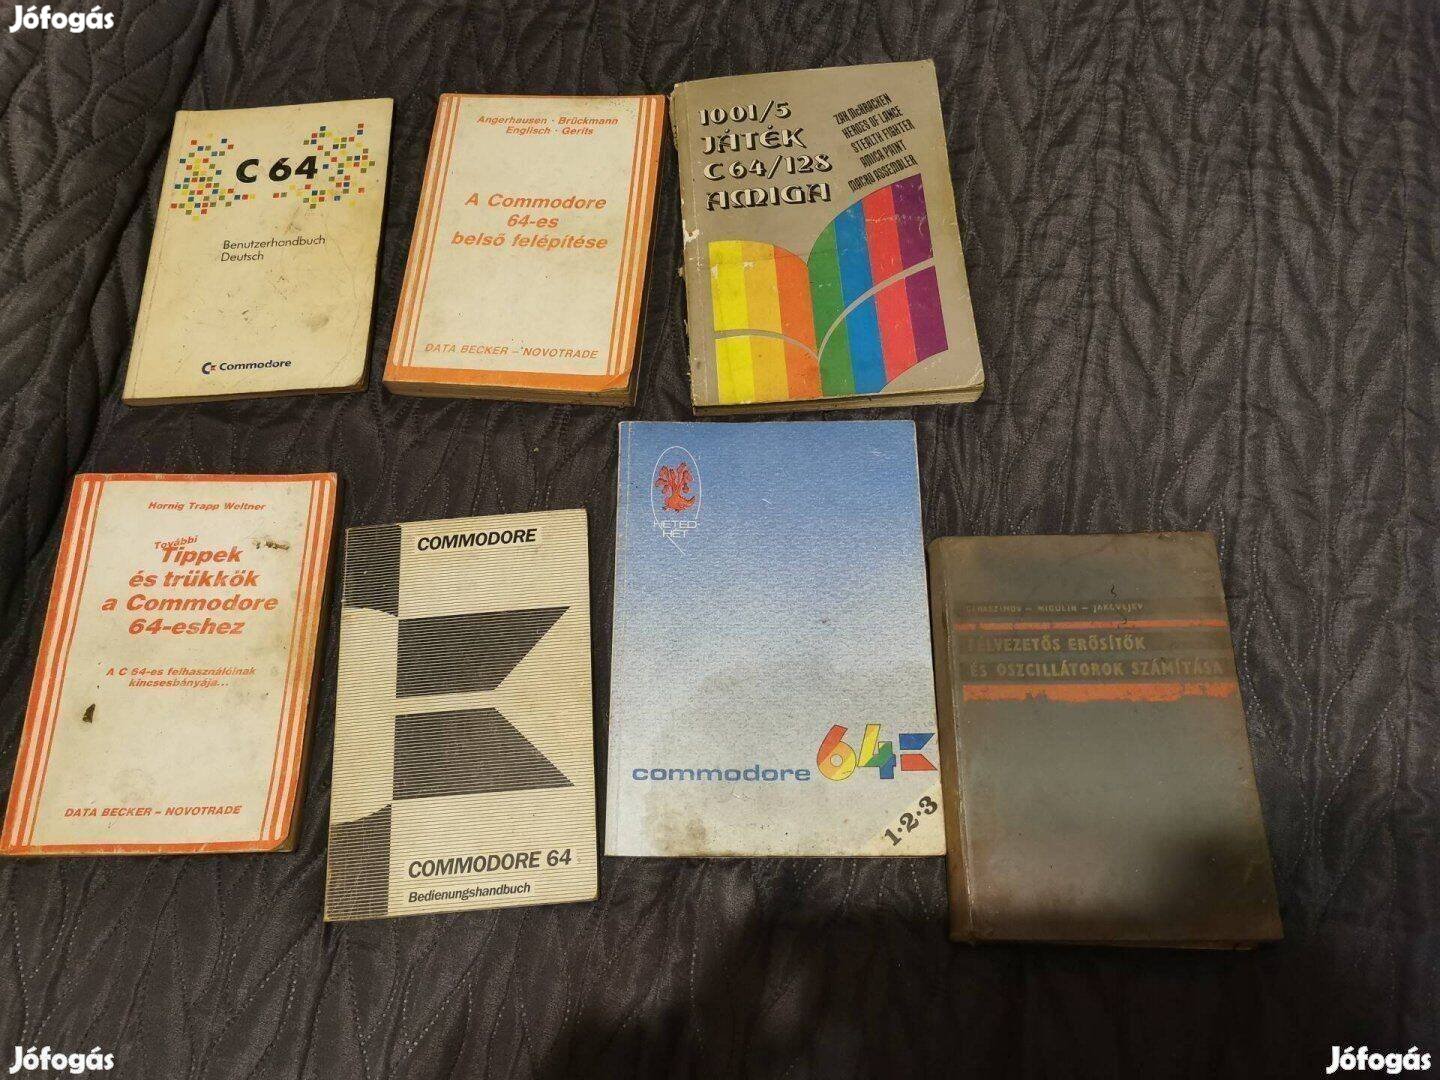 Commodore 64 c64 amiga Elektronika Számitástechnikai könyvek egyben